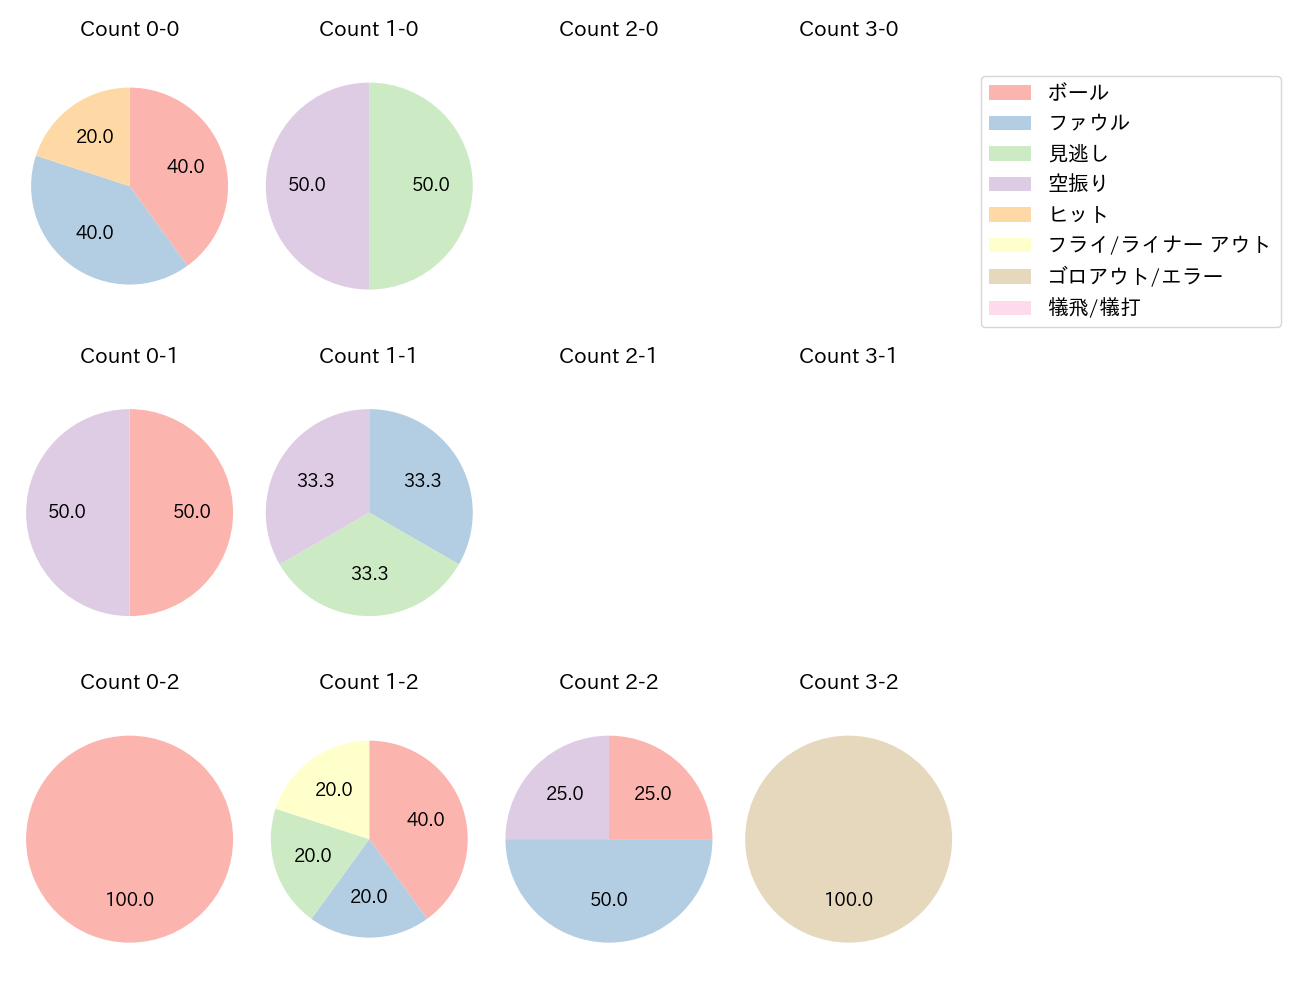 和田 康士朗の球数分布(2021年ポストシーズン)